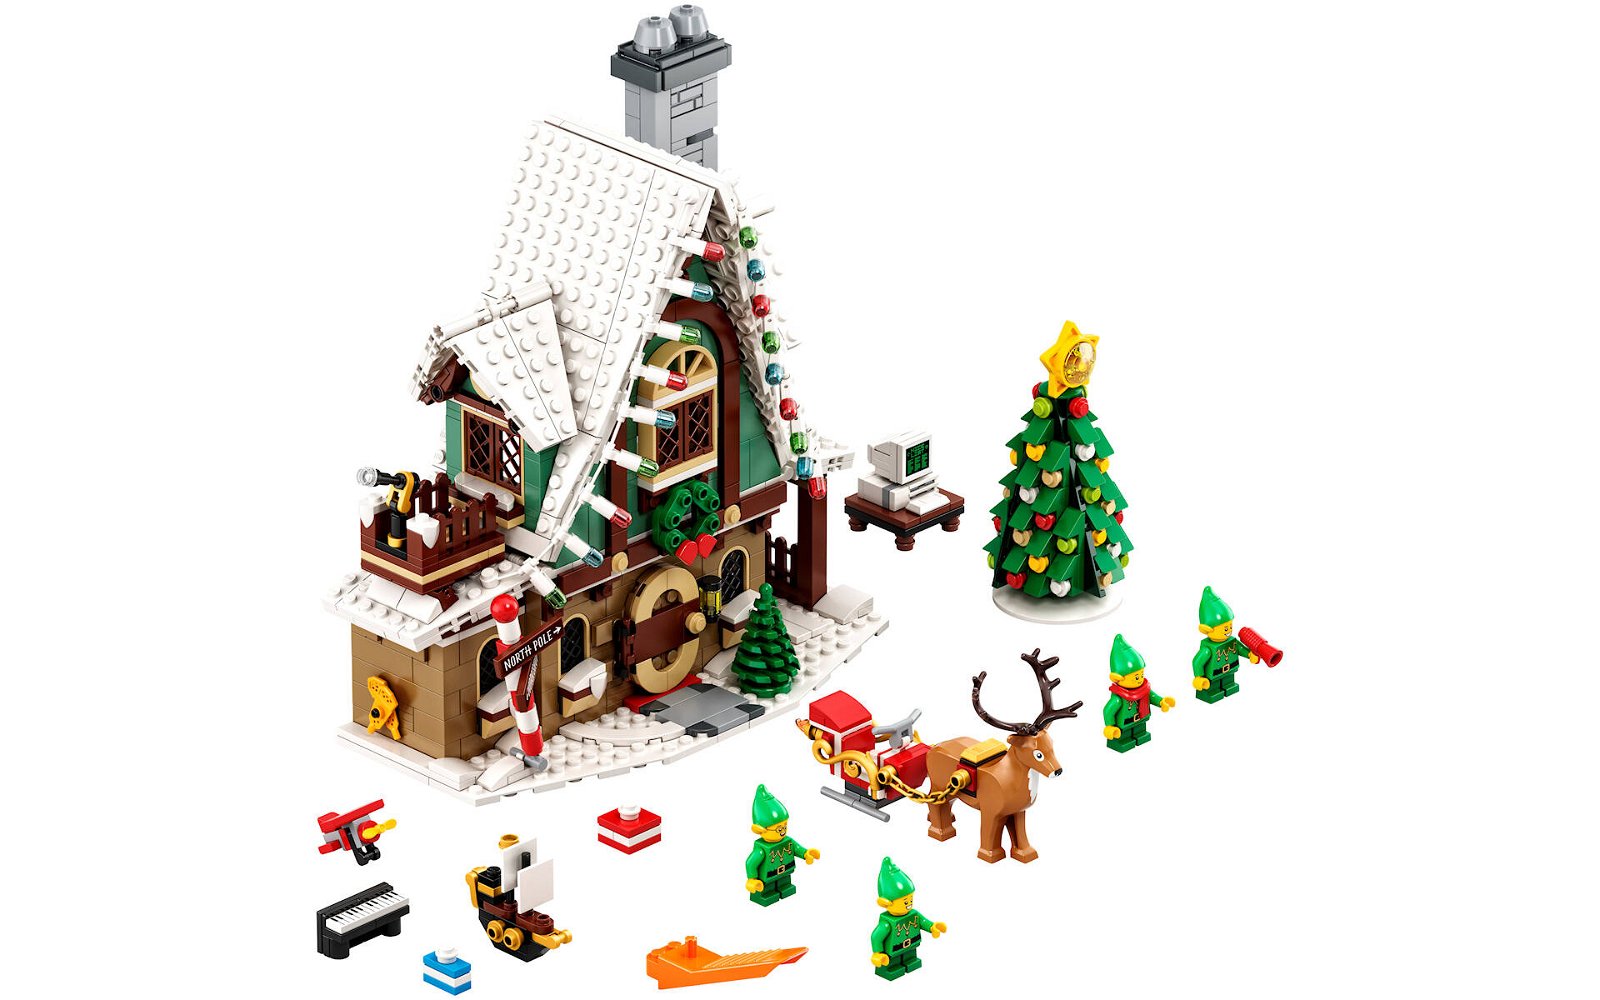 Immagine di LEGO: annunciato oggi il nuovo set # 10275 Club House degli Elfi